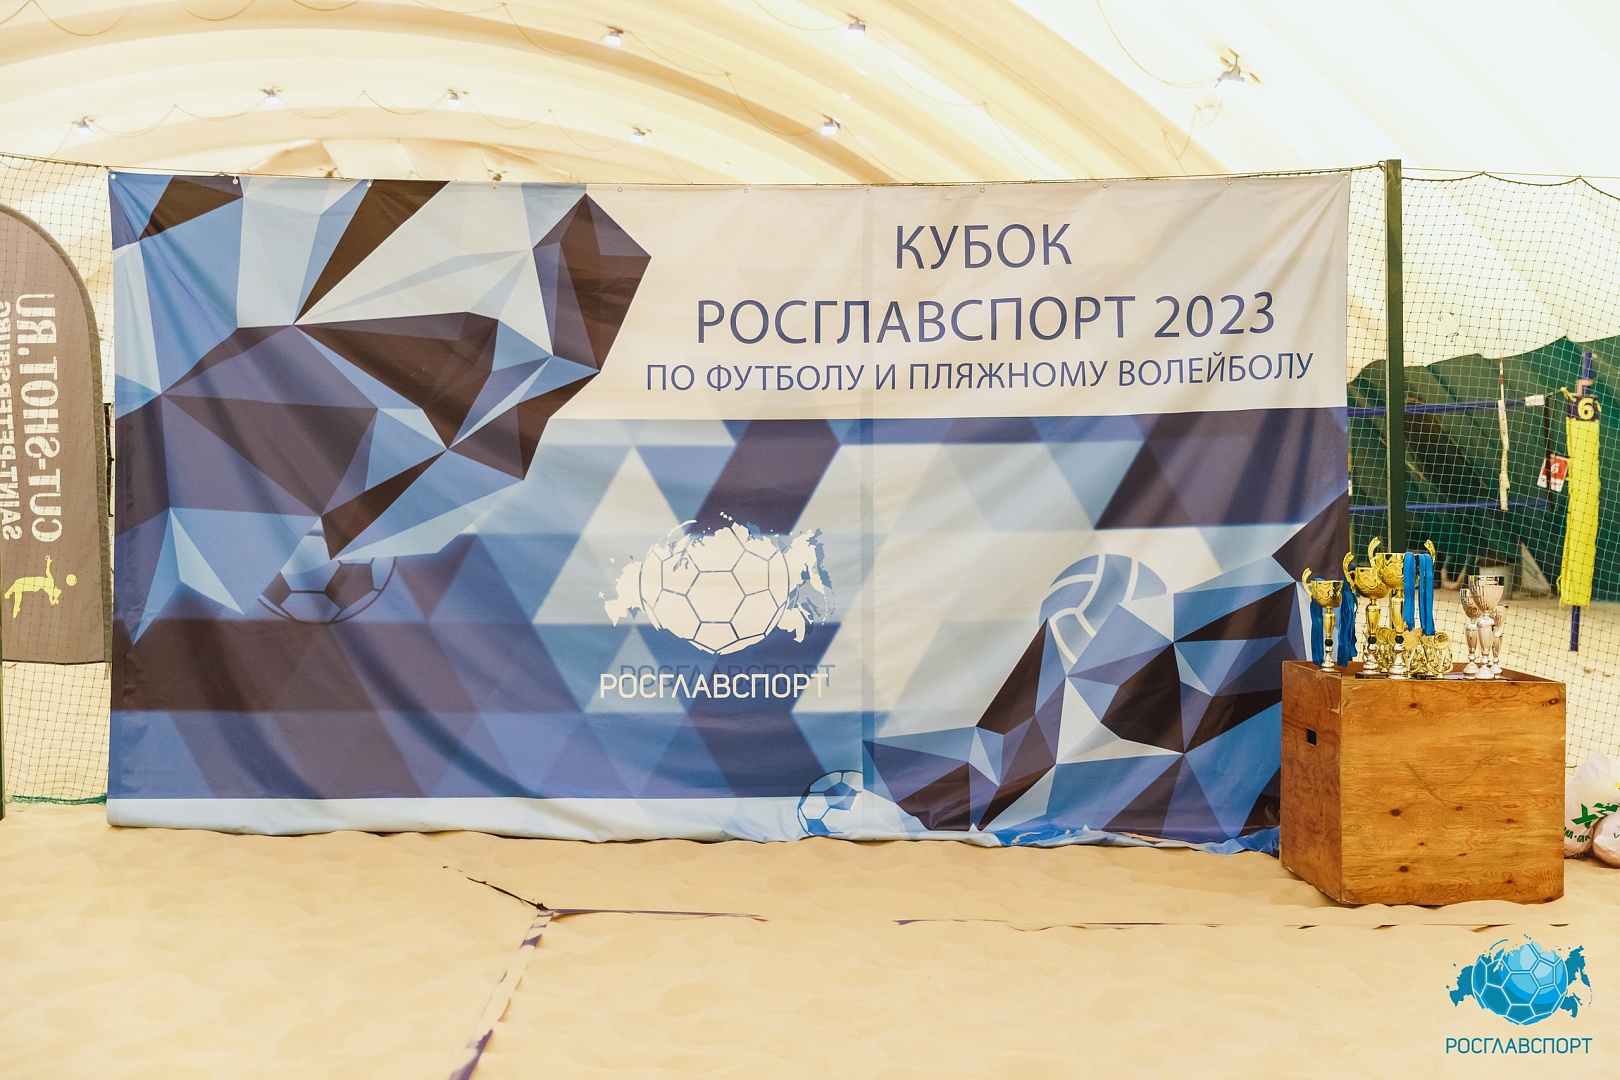 Корпоративный турнир по пляжному волейболу «Кубок Росглавспорт 2023» в Фабрике Футбола